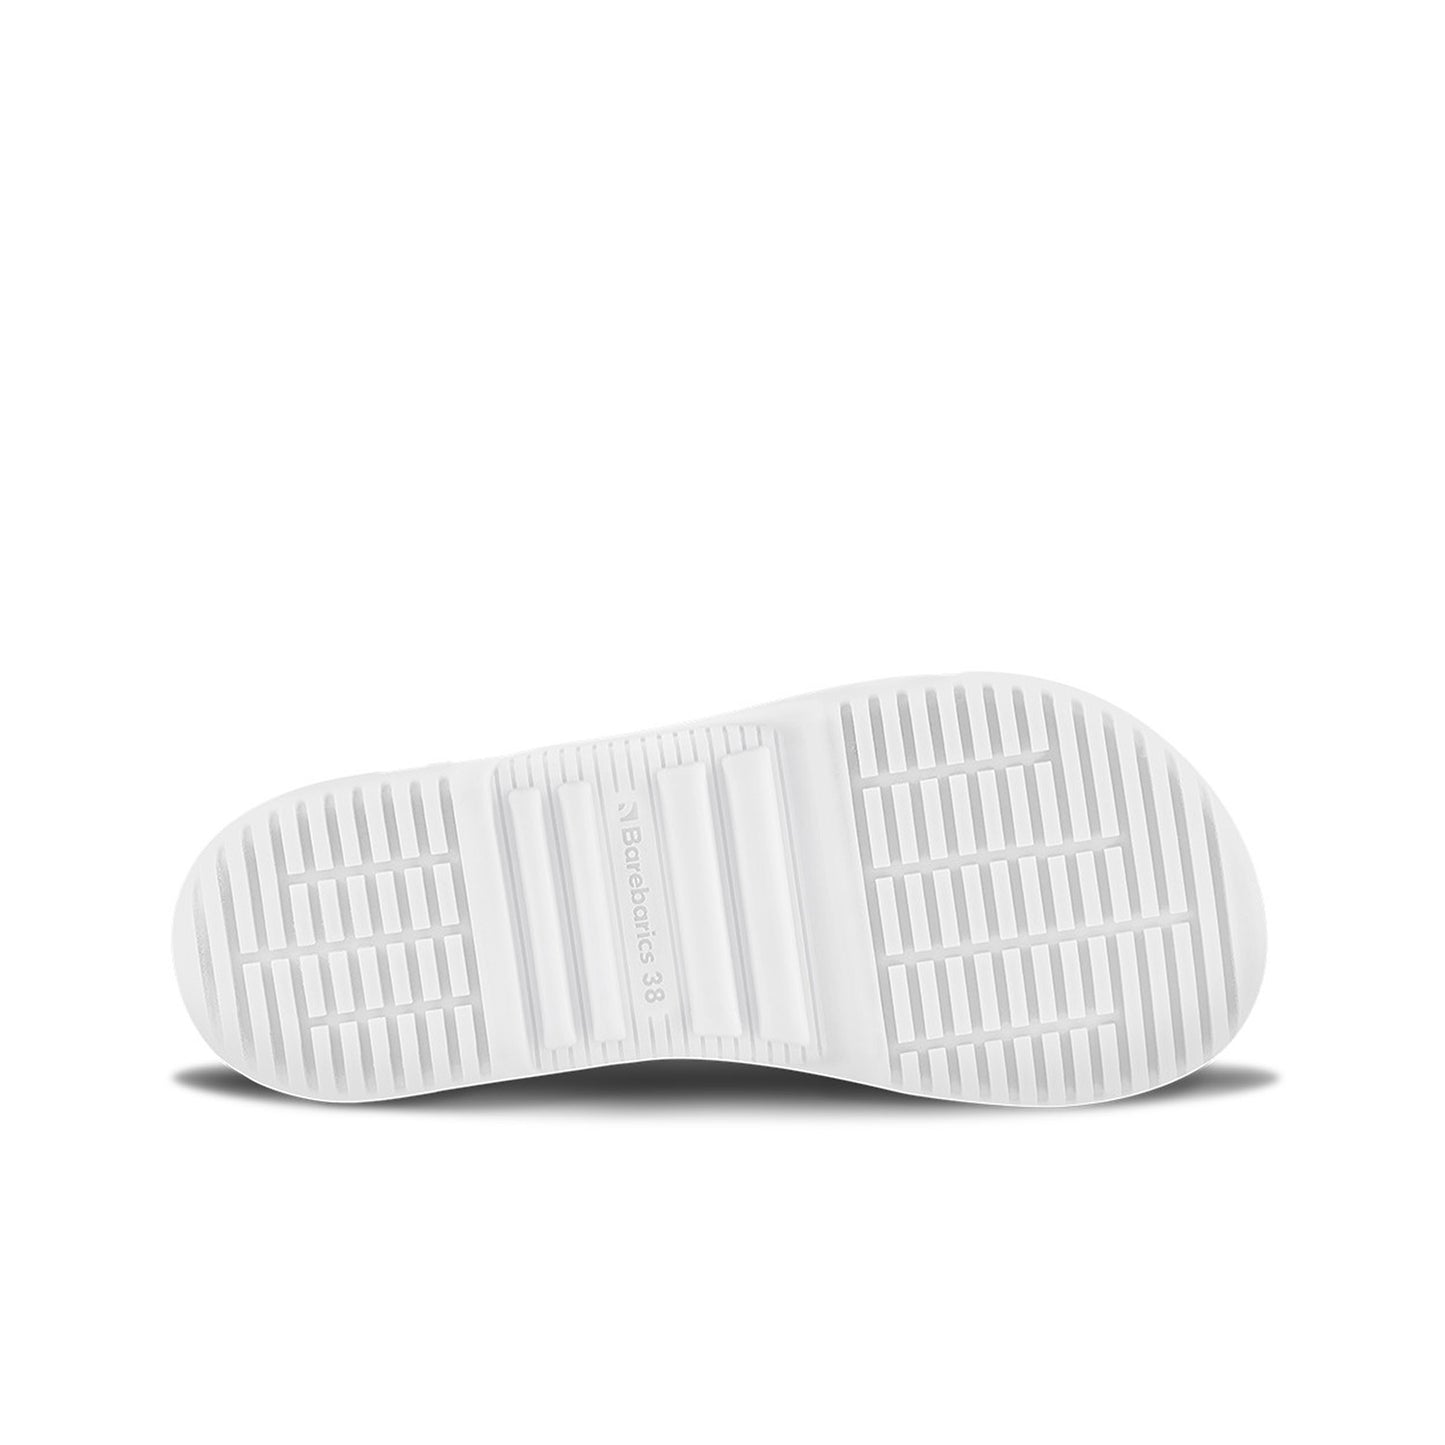 Barebarics Bravo Barefoot Sneakers - Black & White